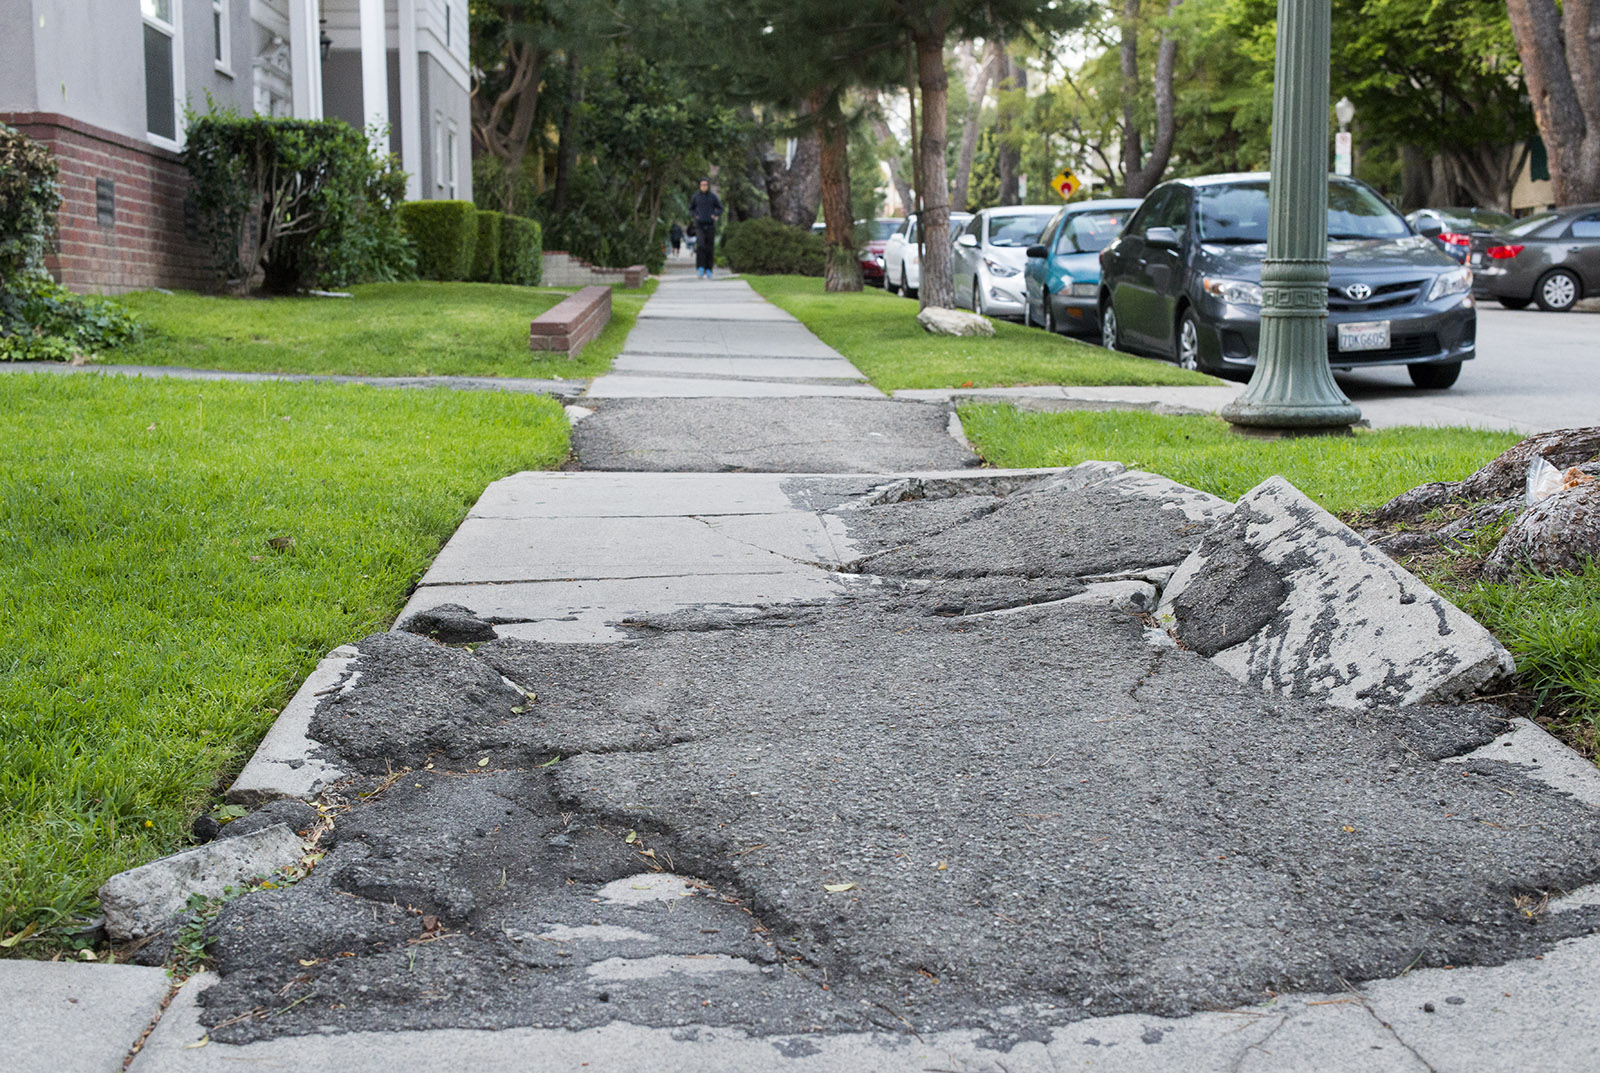 Sidewalk Repair: Should Cities Consider Raising Over Replacing?